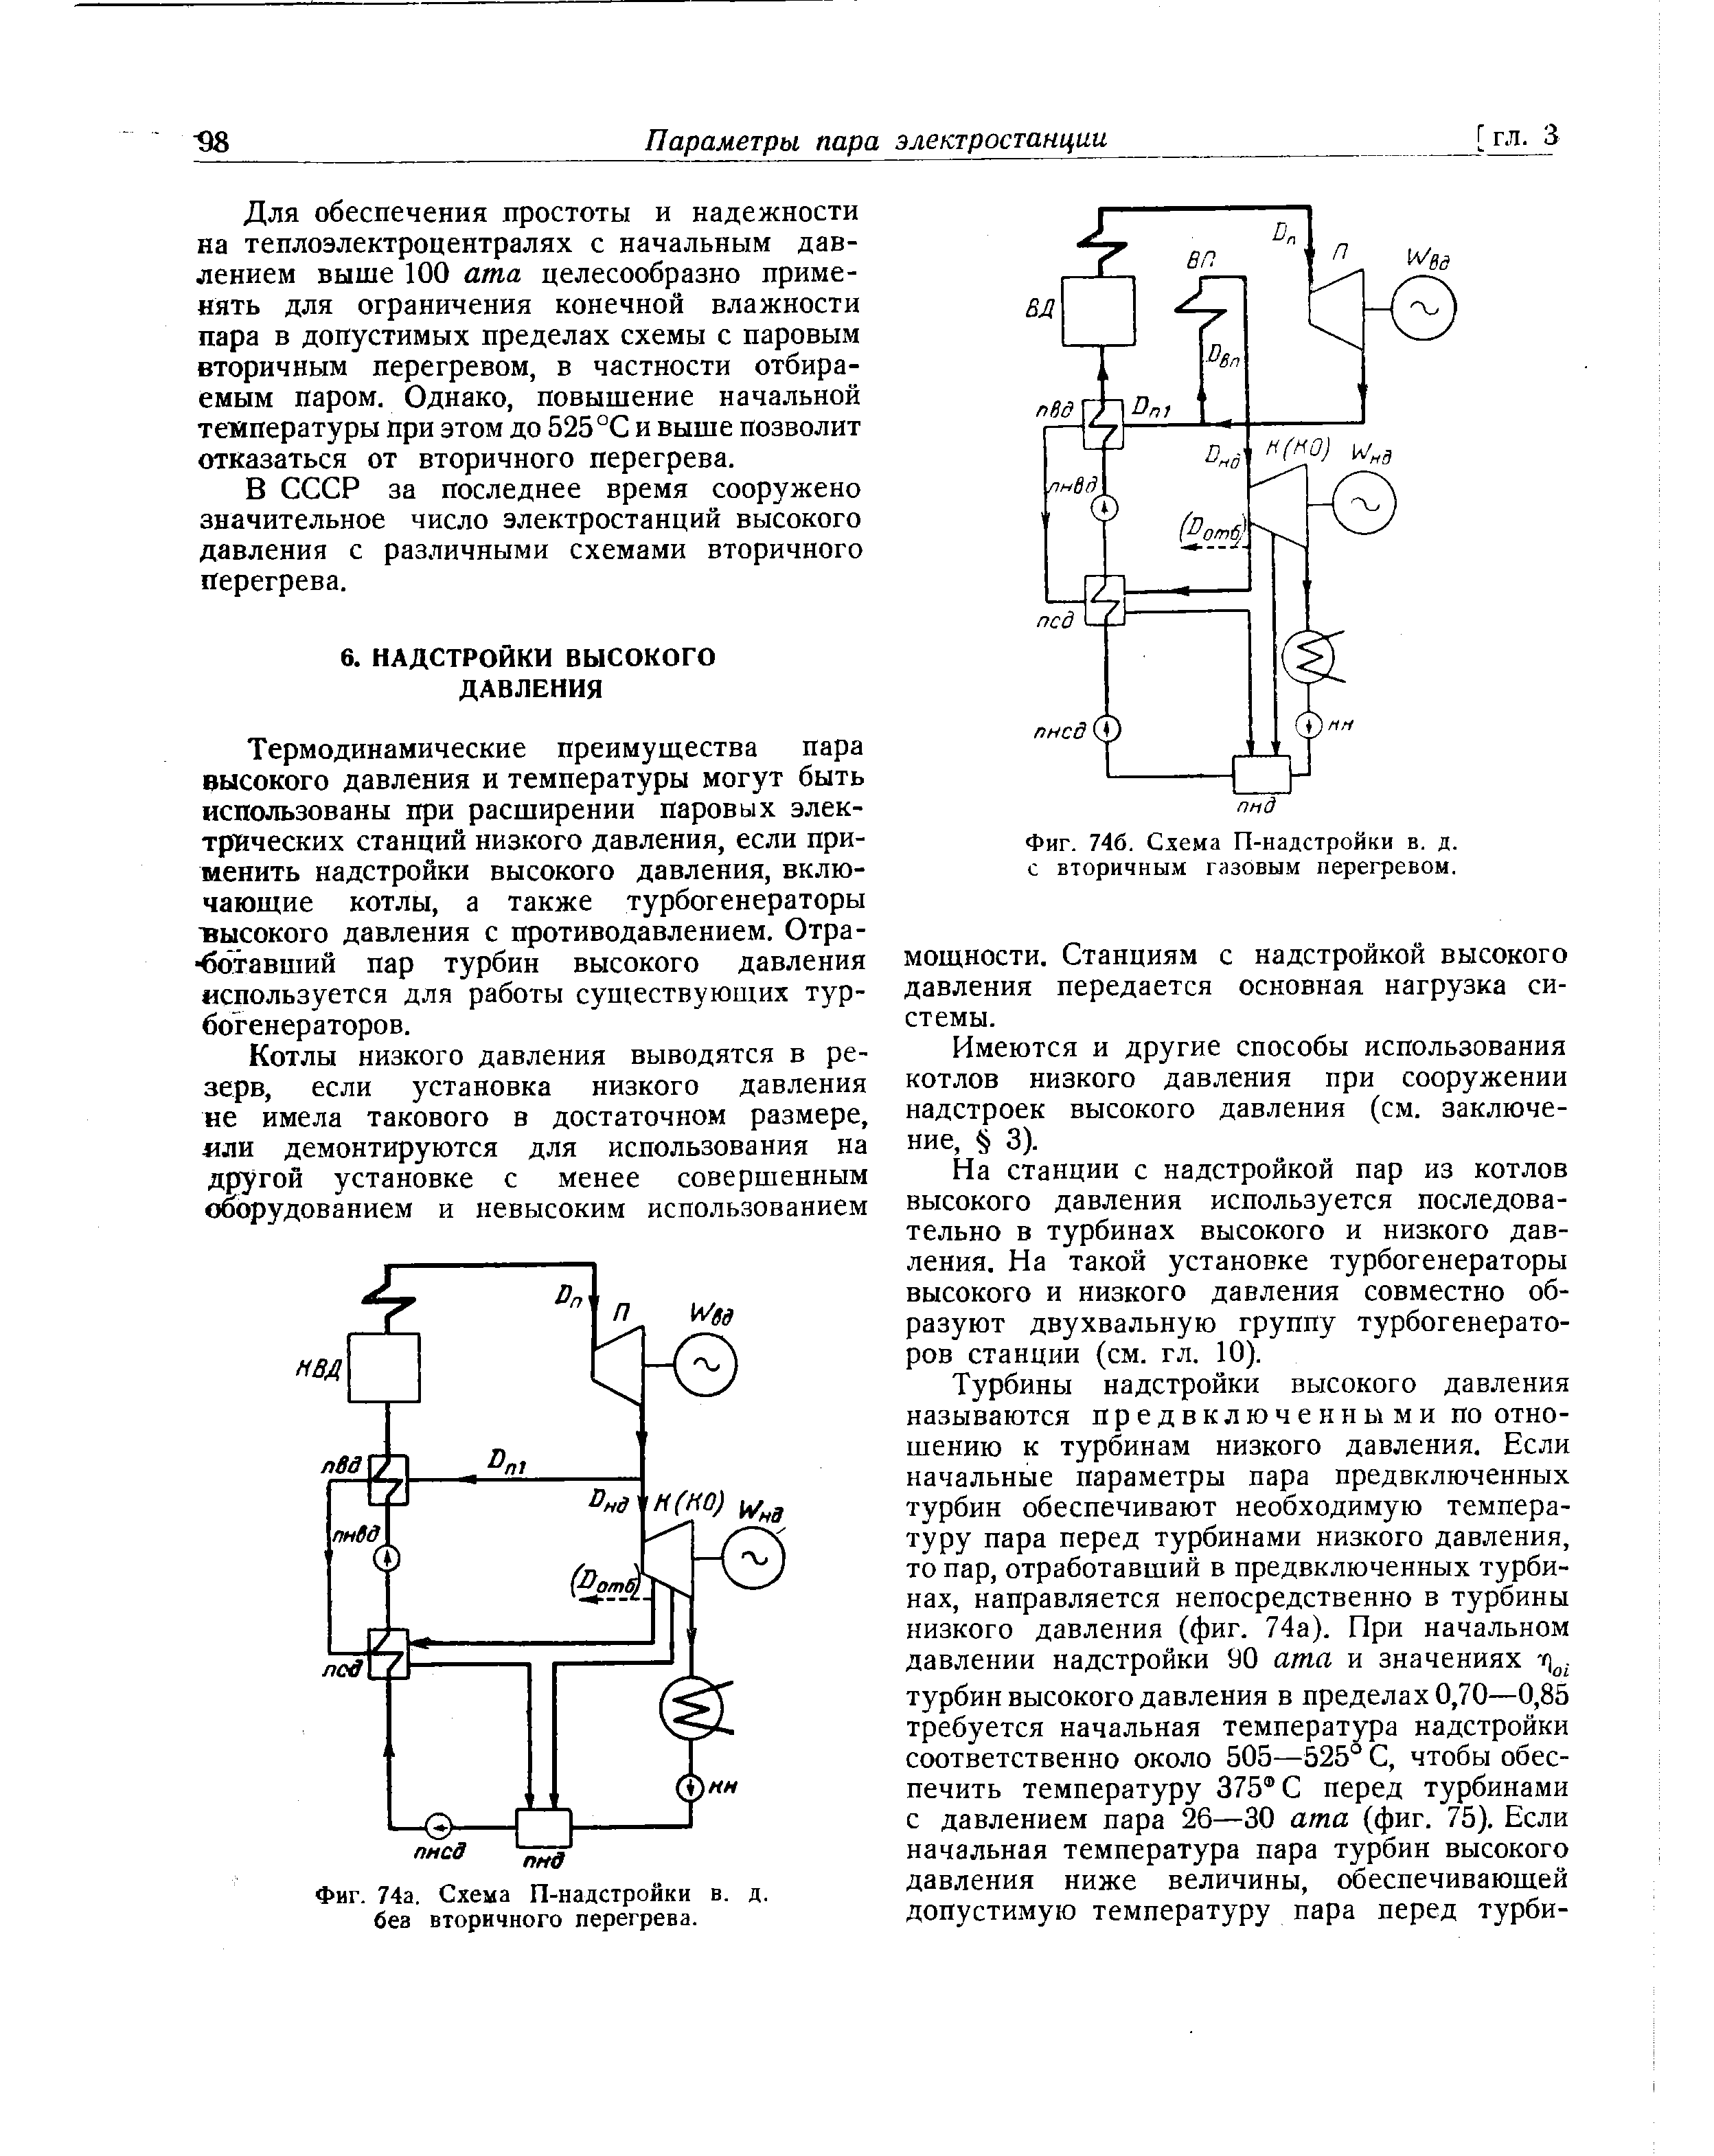 Фиг. 746. Схема П-надстройки в. д. с вторичным газовым перегревом.
